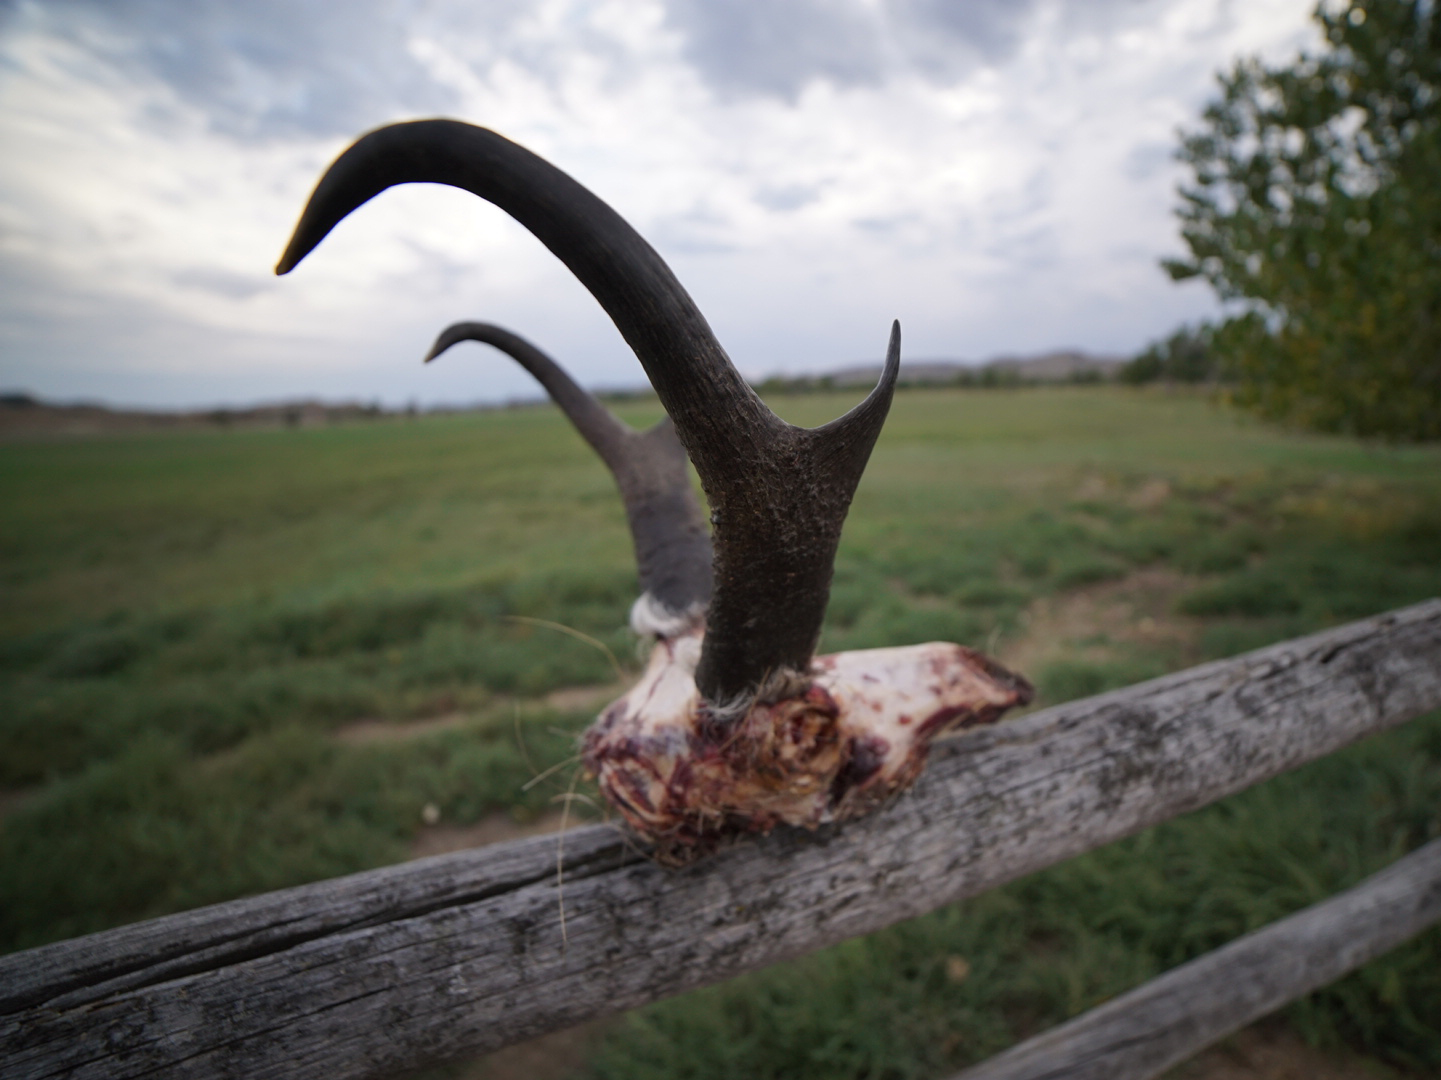 Archery Antelope skull on a fence.